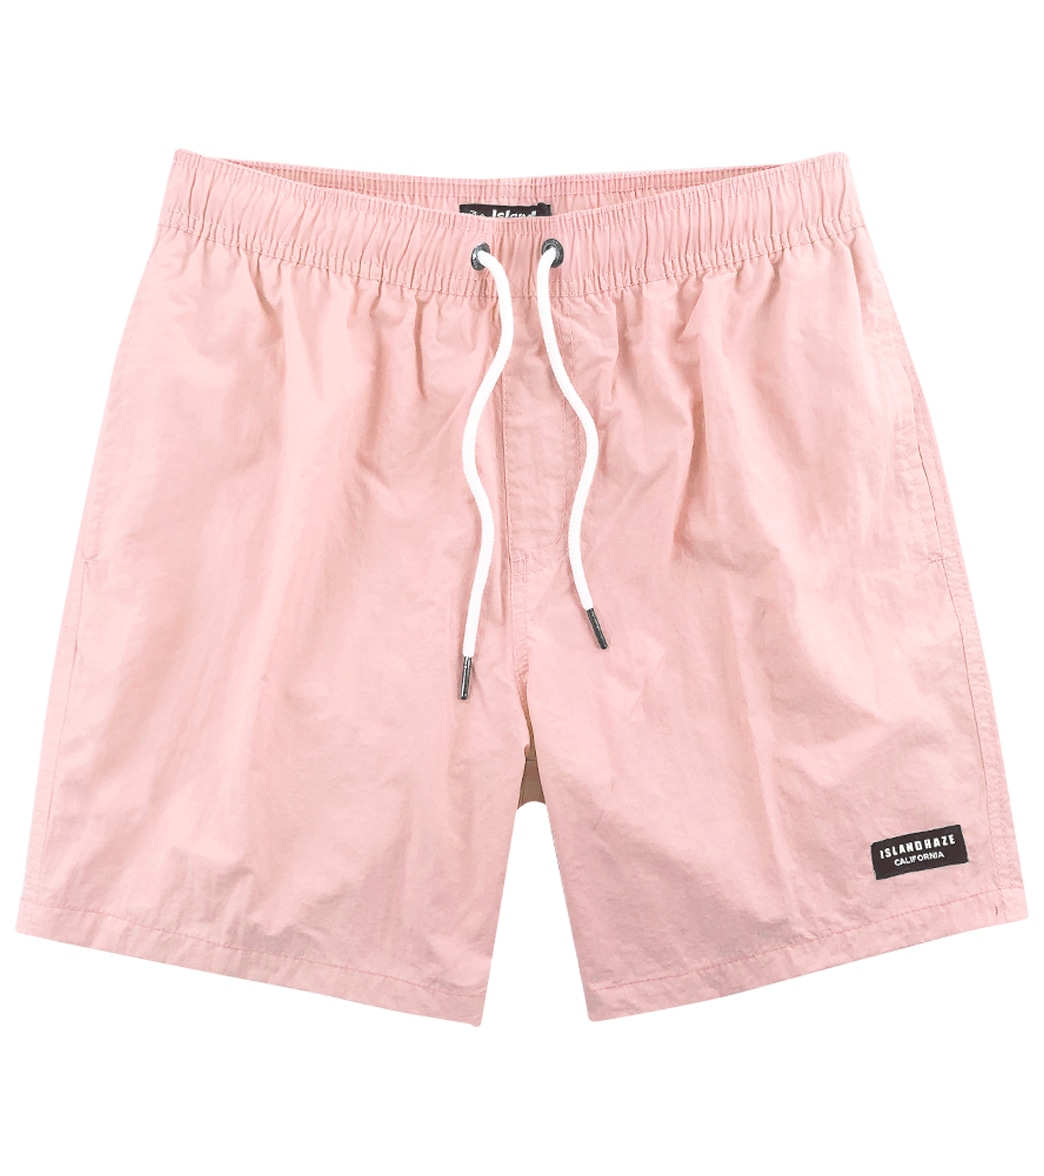 Island Haze Men's 17 Havana Solid Volley Shorts - Pink Large - Swimoutlet.com